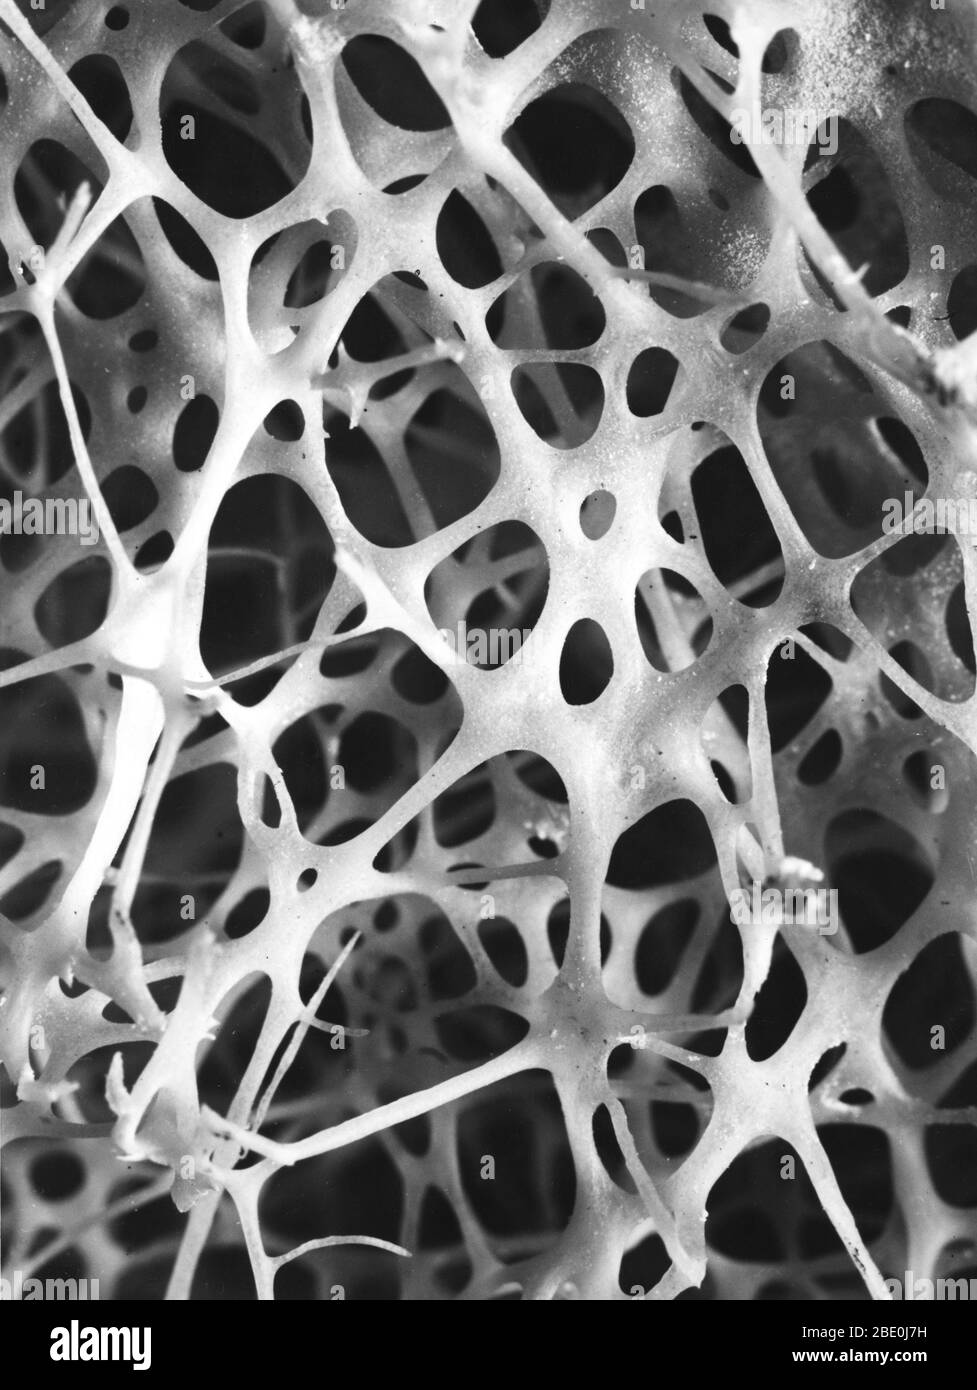 Micrografia elettronica a scansione (SEM) dell'osso spongioso della shin umana. Il tessuto osseo è compatto o tumoso. L'osso compatto di solito costituisce l'esterno dell'osso, mentre l'osso spongioso si trova all'interno. L'osso tumultuoso è caratterizzato da una disposizione a nido d'ape di trabecole. Queste strutture aiutano a fornire sostegno e forza. Gli spazi all'interno di questo tessuto contengono normalmente midollo osseo, una sostanza che forma sangue. Foto Stock